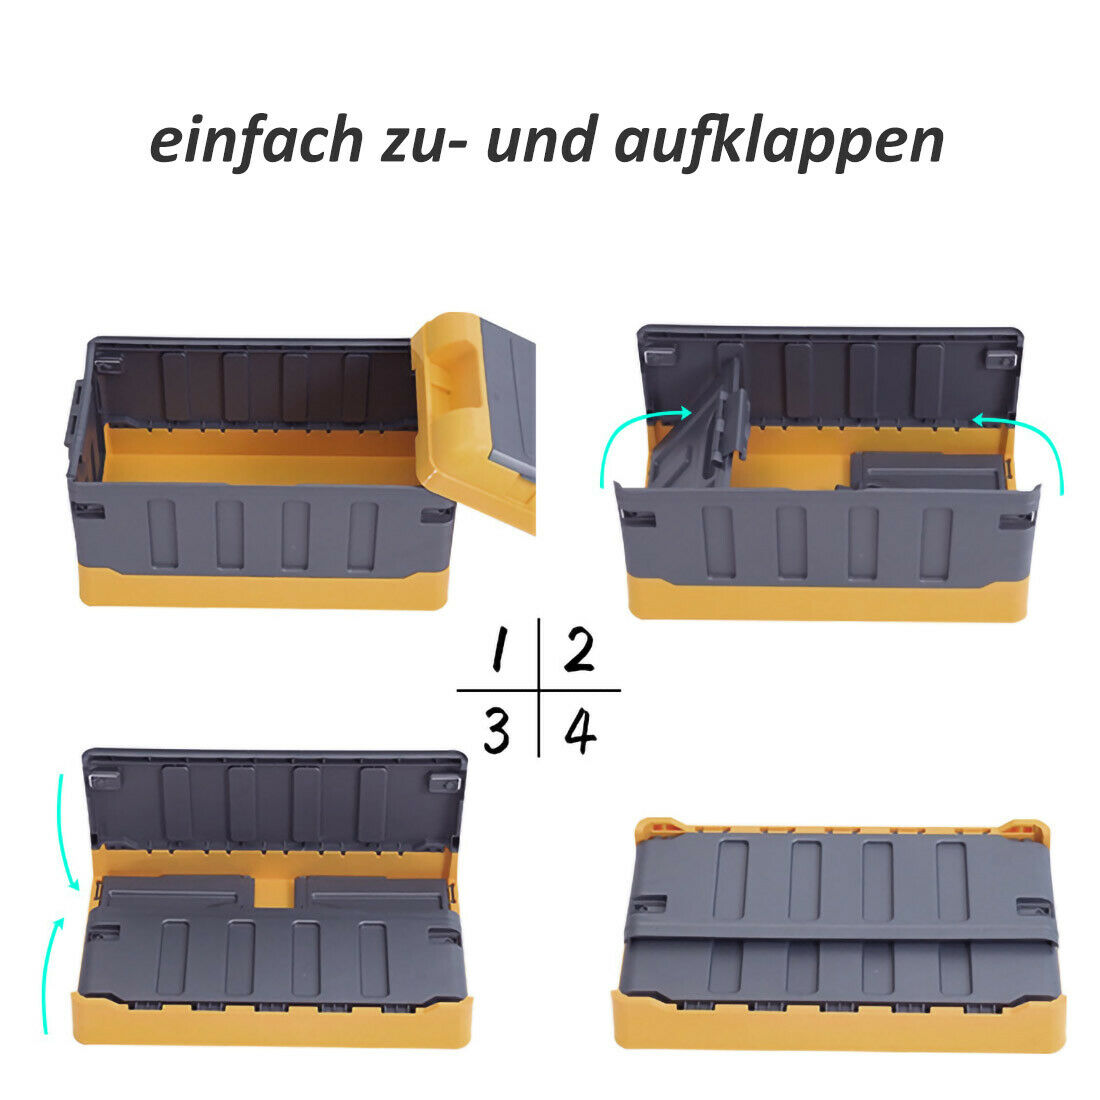 Premium faltbare Aufbewahrungsbox mit Deckel Faltbox Box Klapp Kiste KFZ Reise Gelb Groß mit hohem Deckel